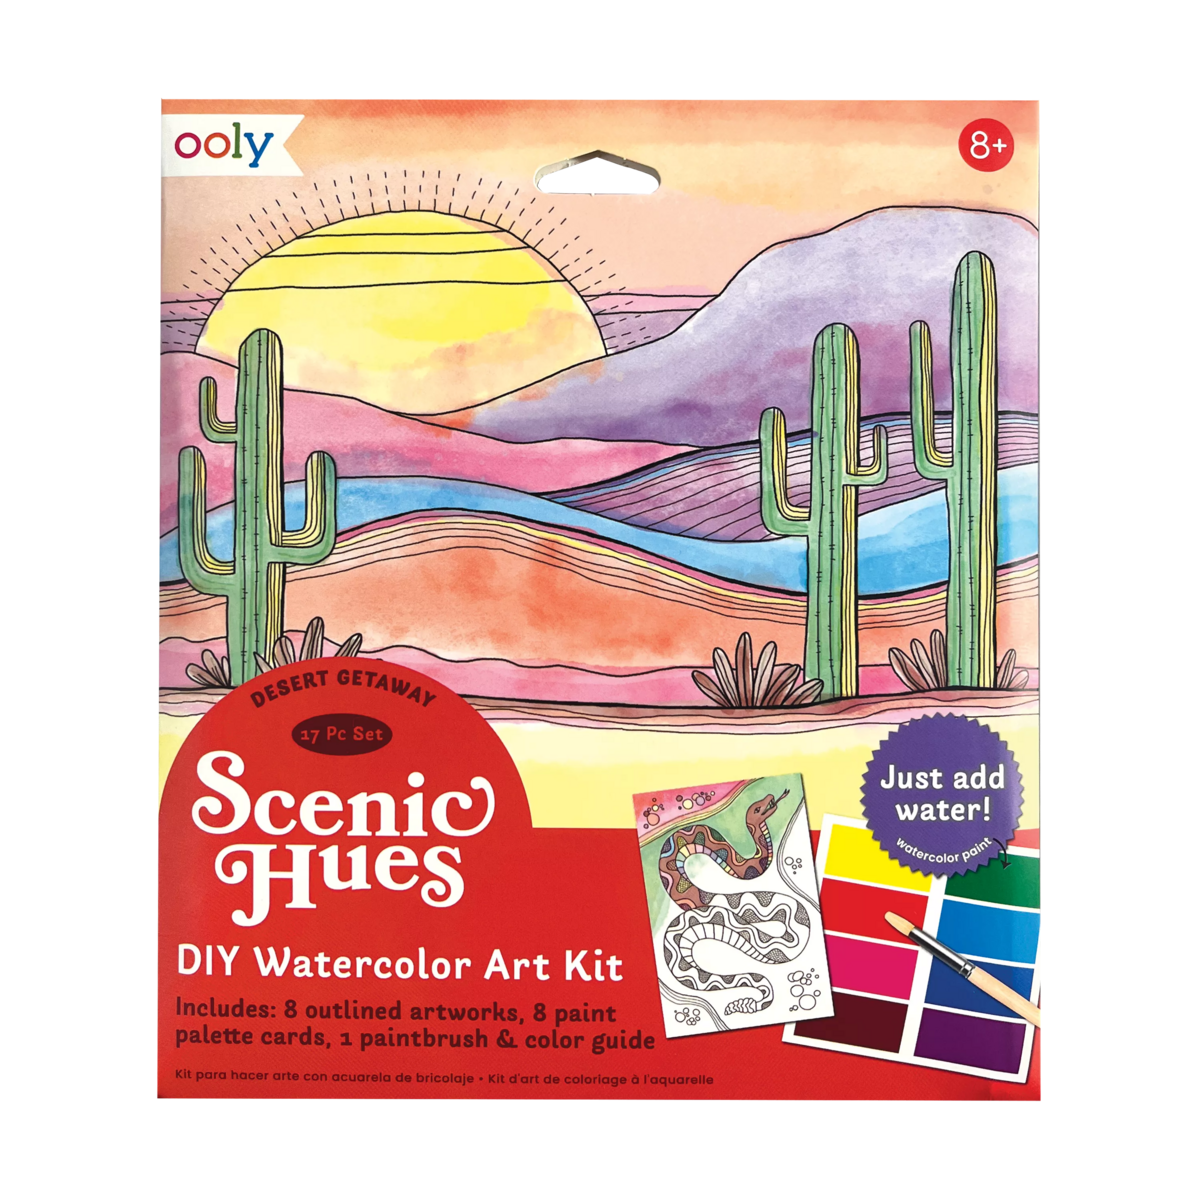 Desert Getaway Scenic Hues DIY watercolor art kit front of packaging